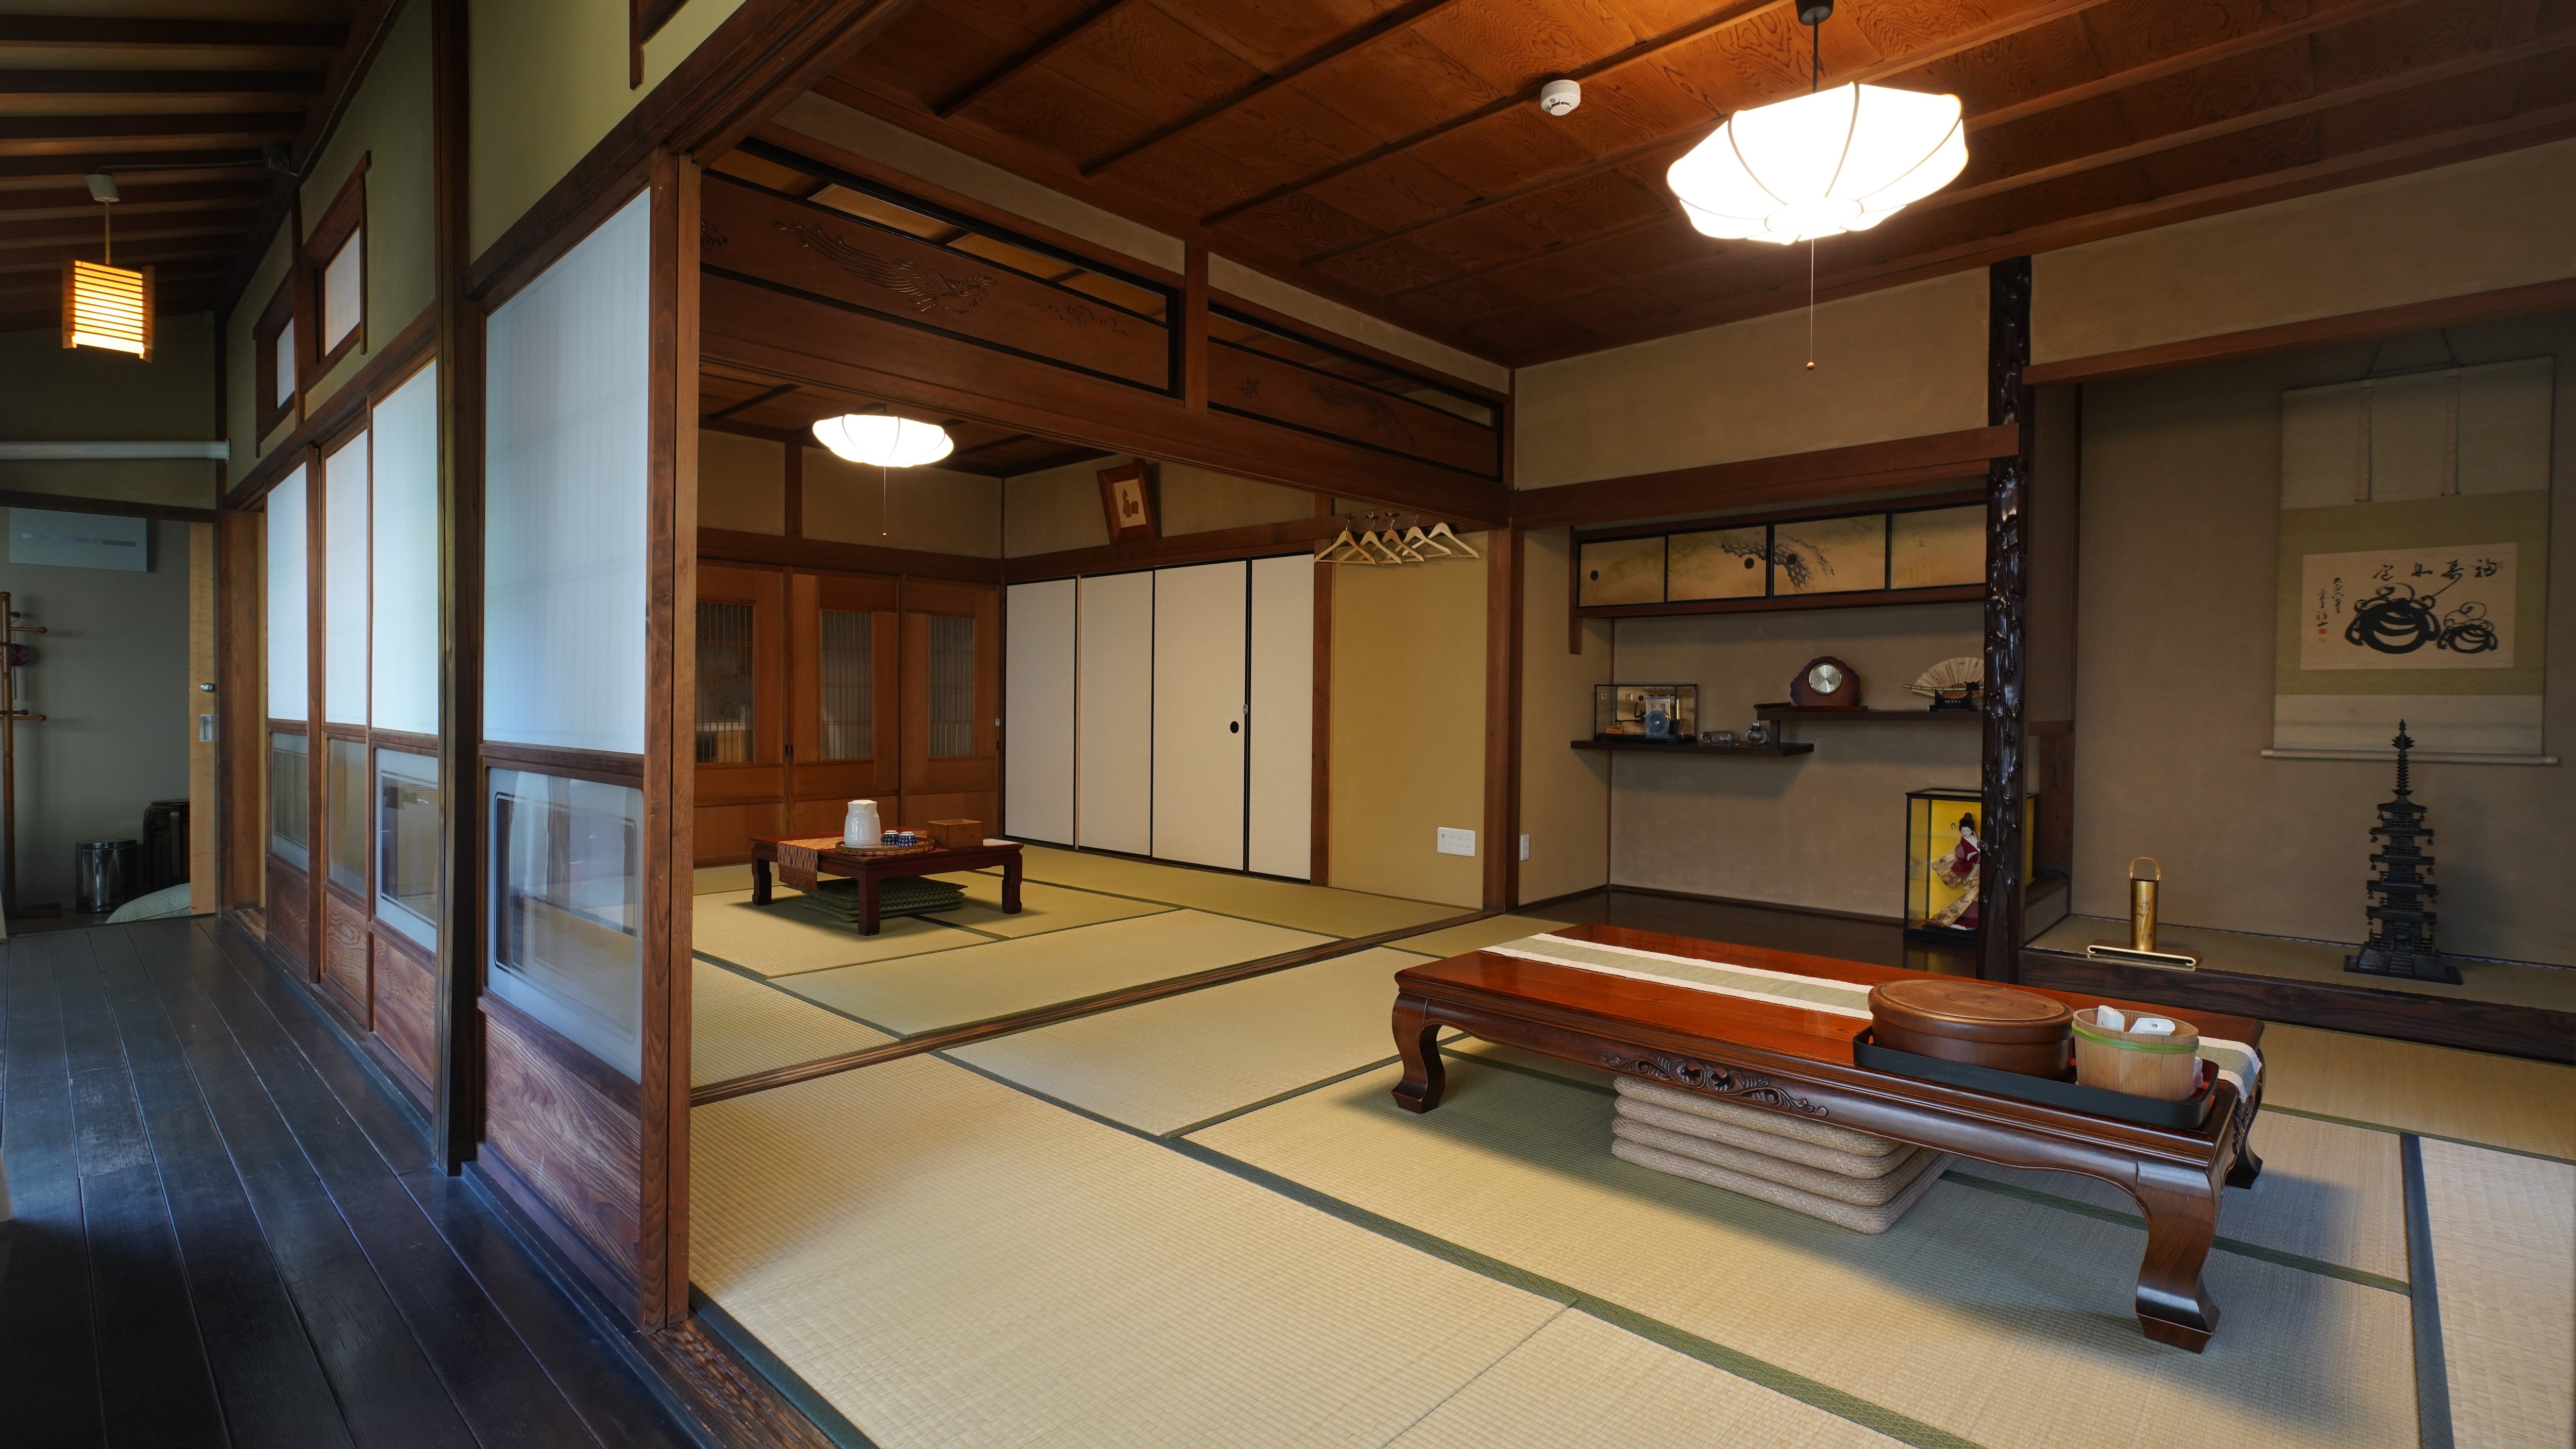 Lantai pertama, kamar bergaya Jepang untuk delapan orang